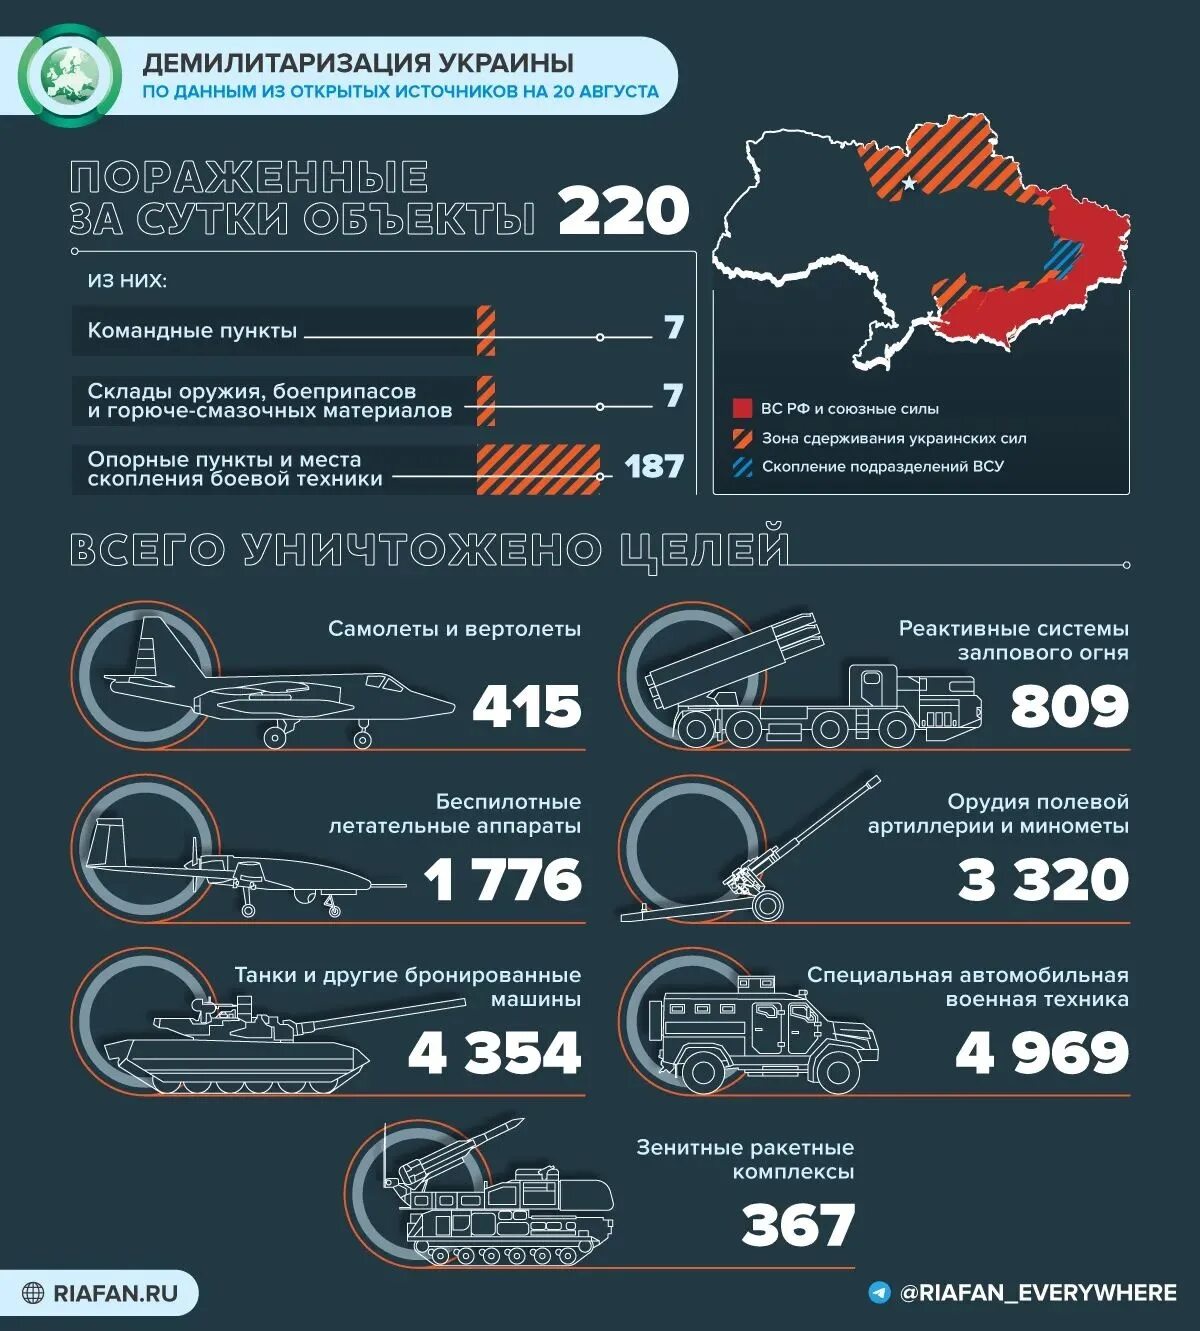 Россия результаты операции. Поставки оружия на Украину инфографика. Потери Украины инфографика. Потери украинских войск 2022 инфографика.